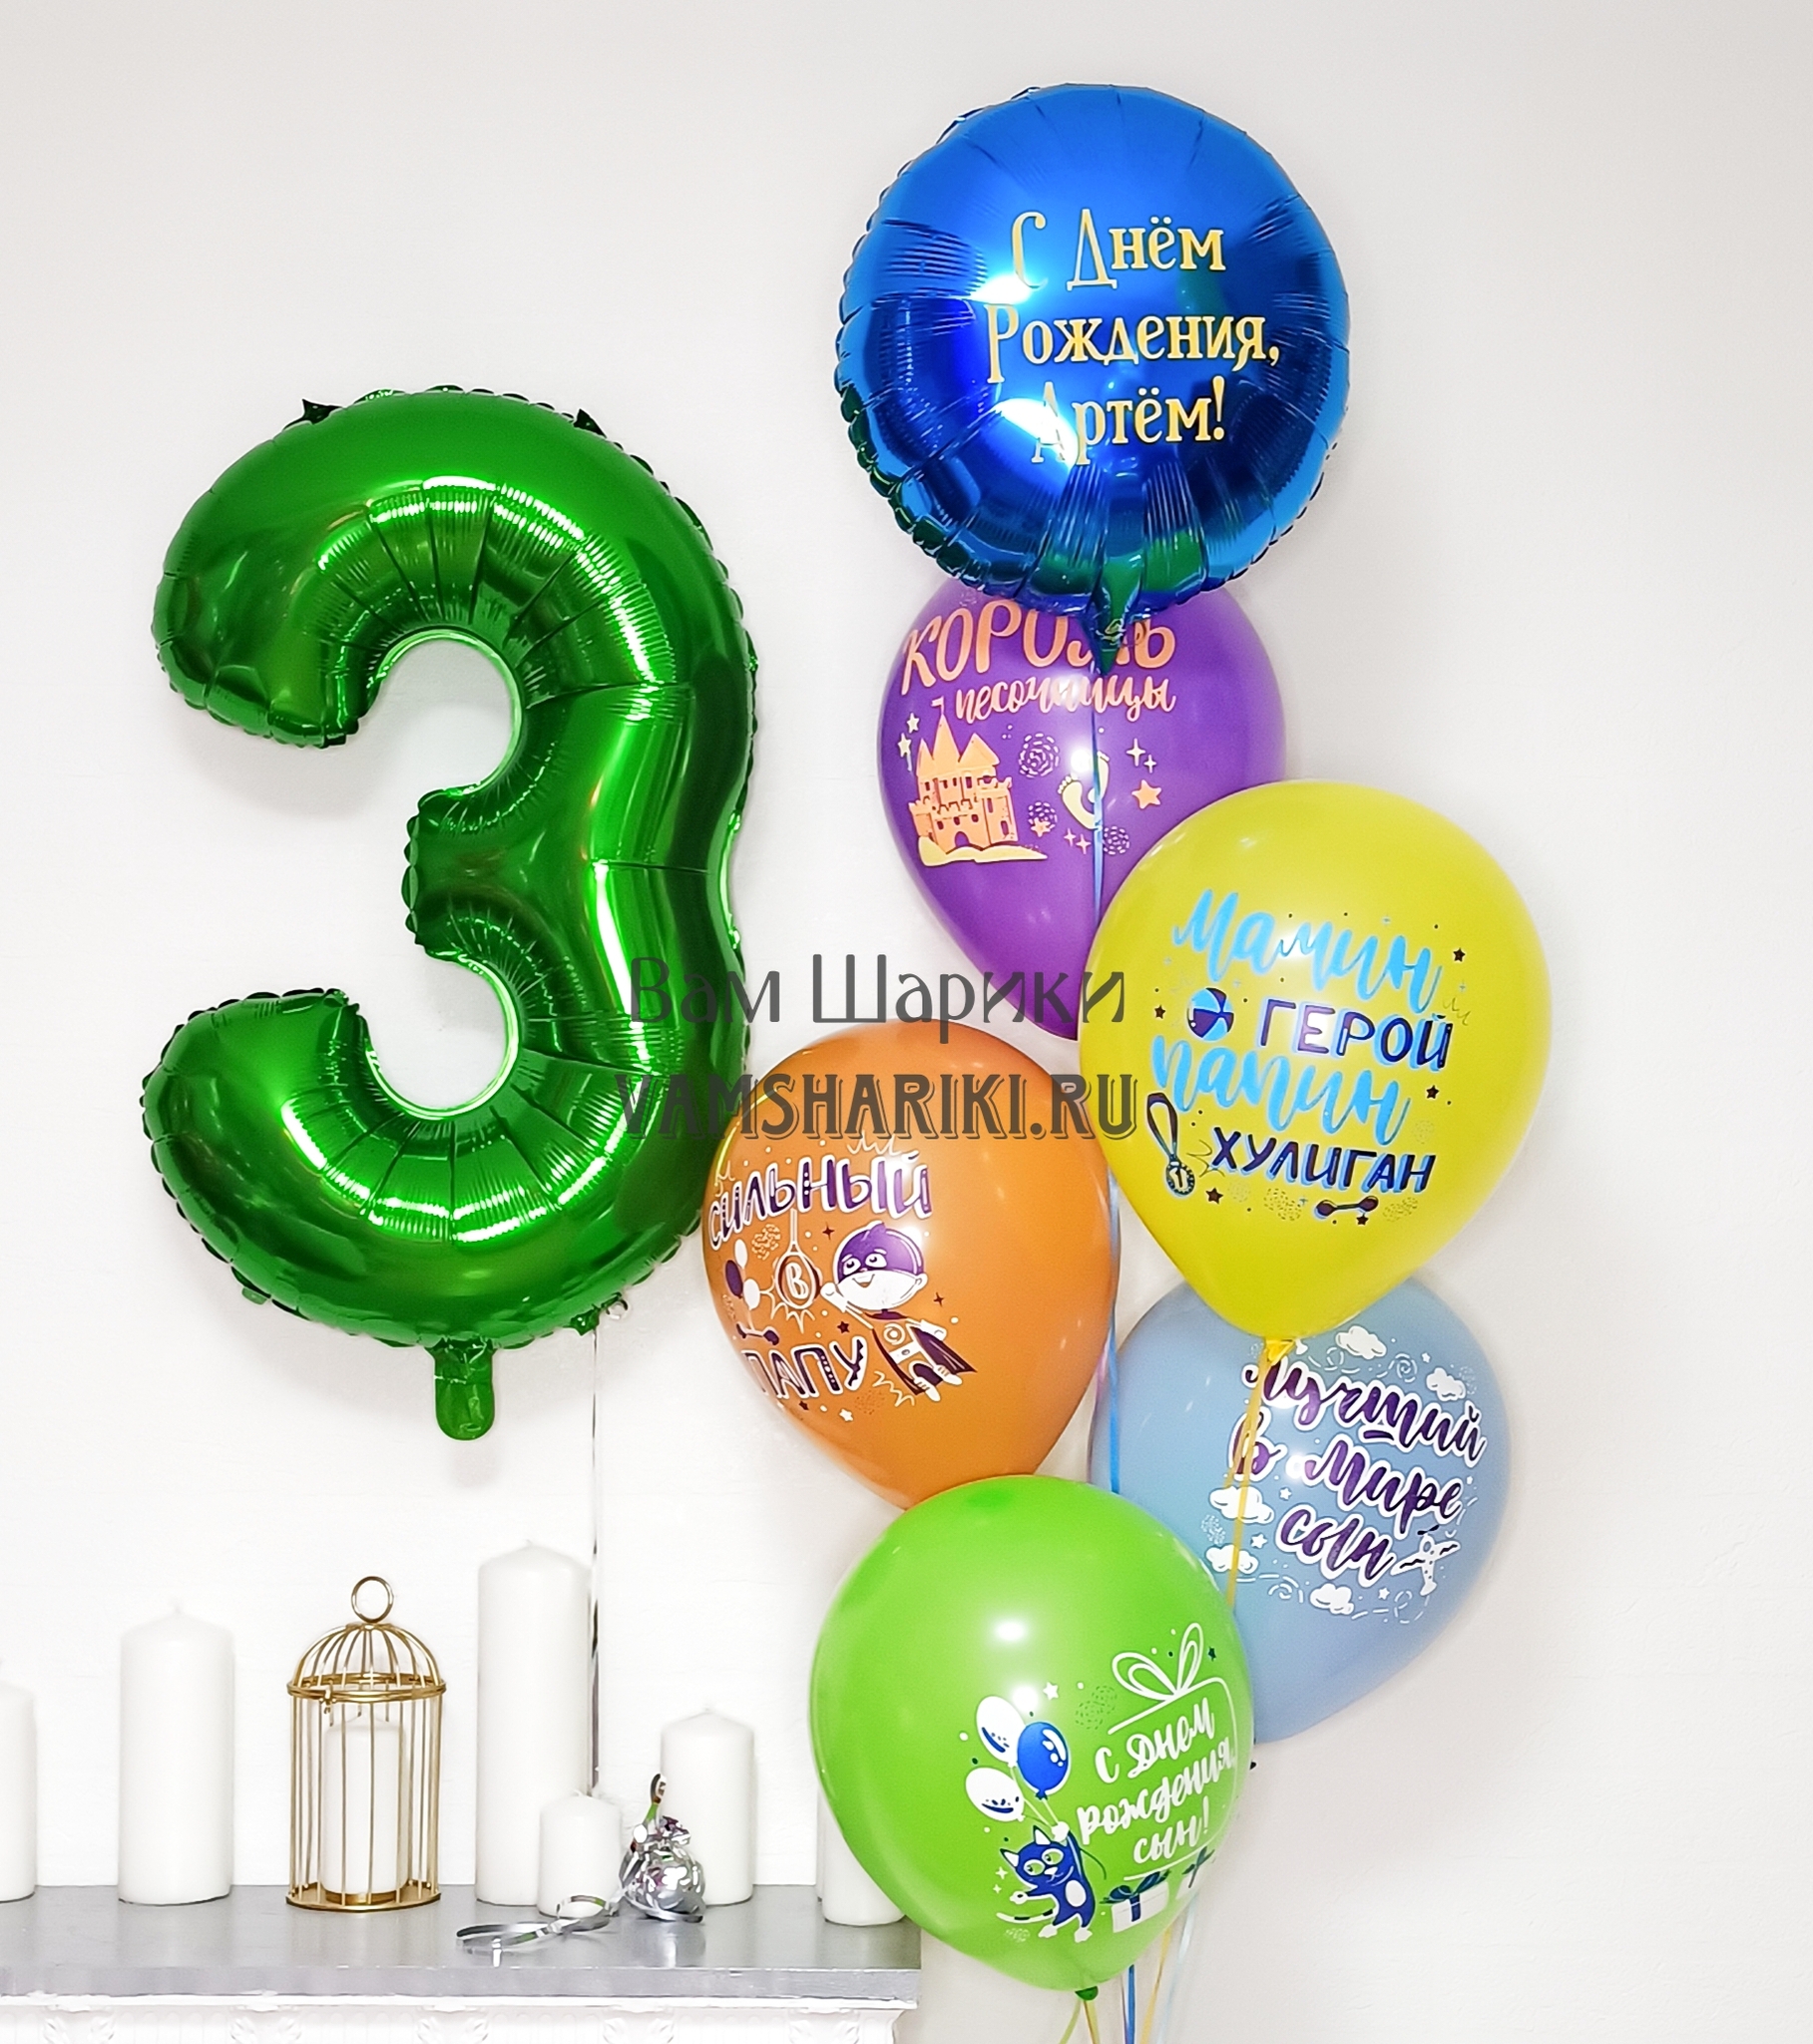 Купить шары на день рождения в Москве с доставкой недорого | Balloonland